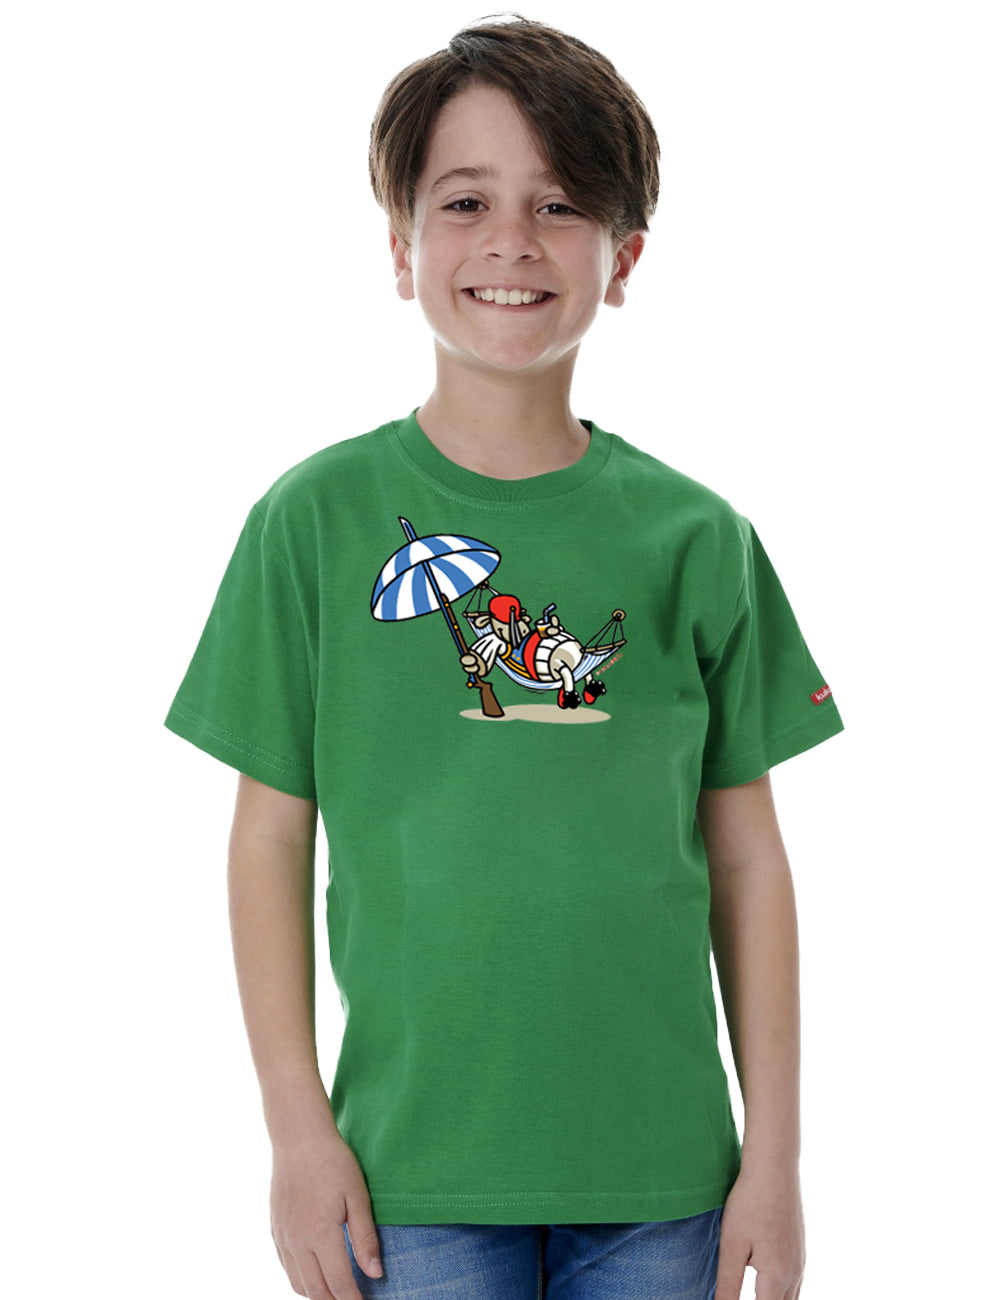 Tsolias Kids T-Shirt